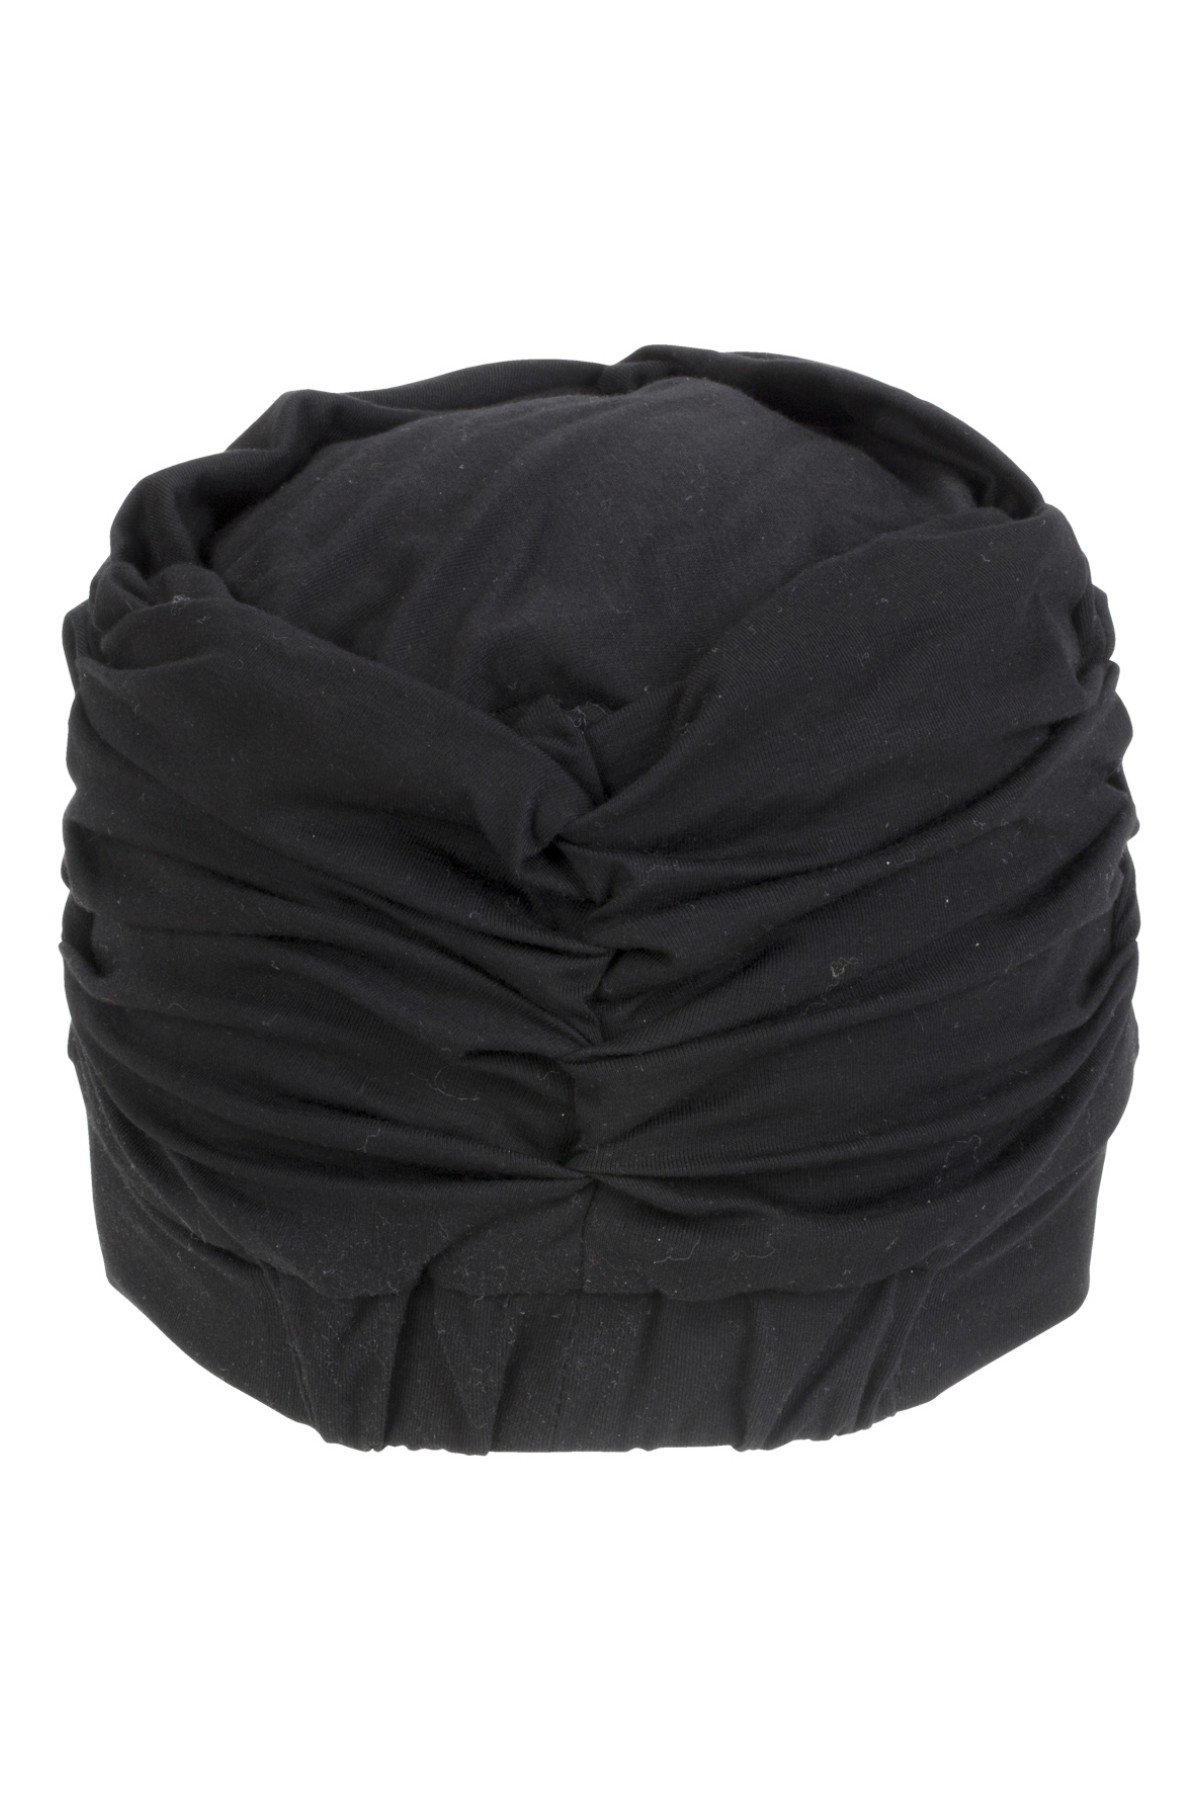 Bonnet Turban Confort et Volume